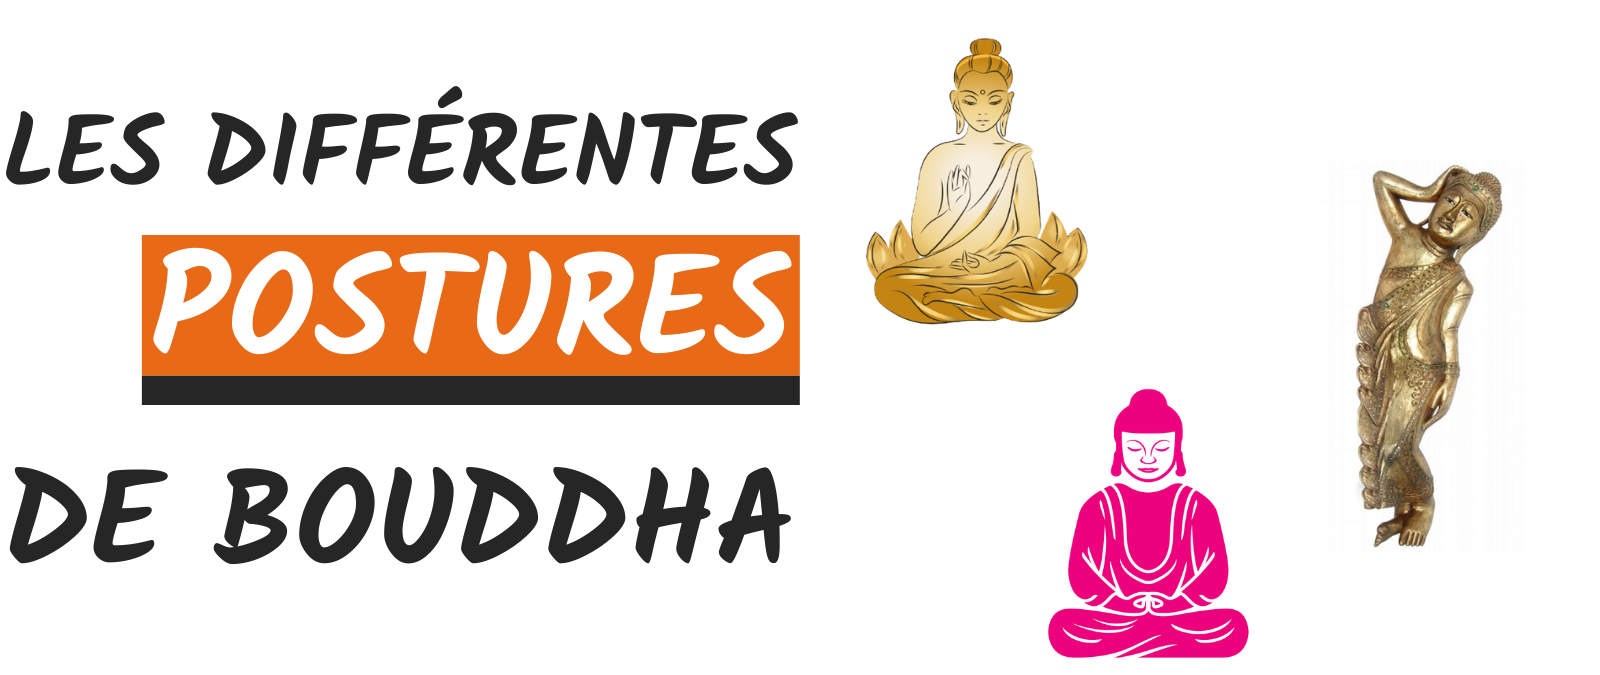 positions de bouddha